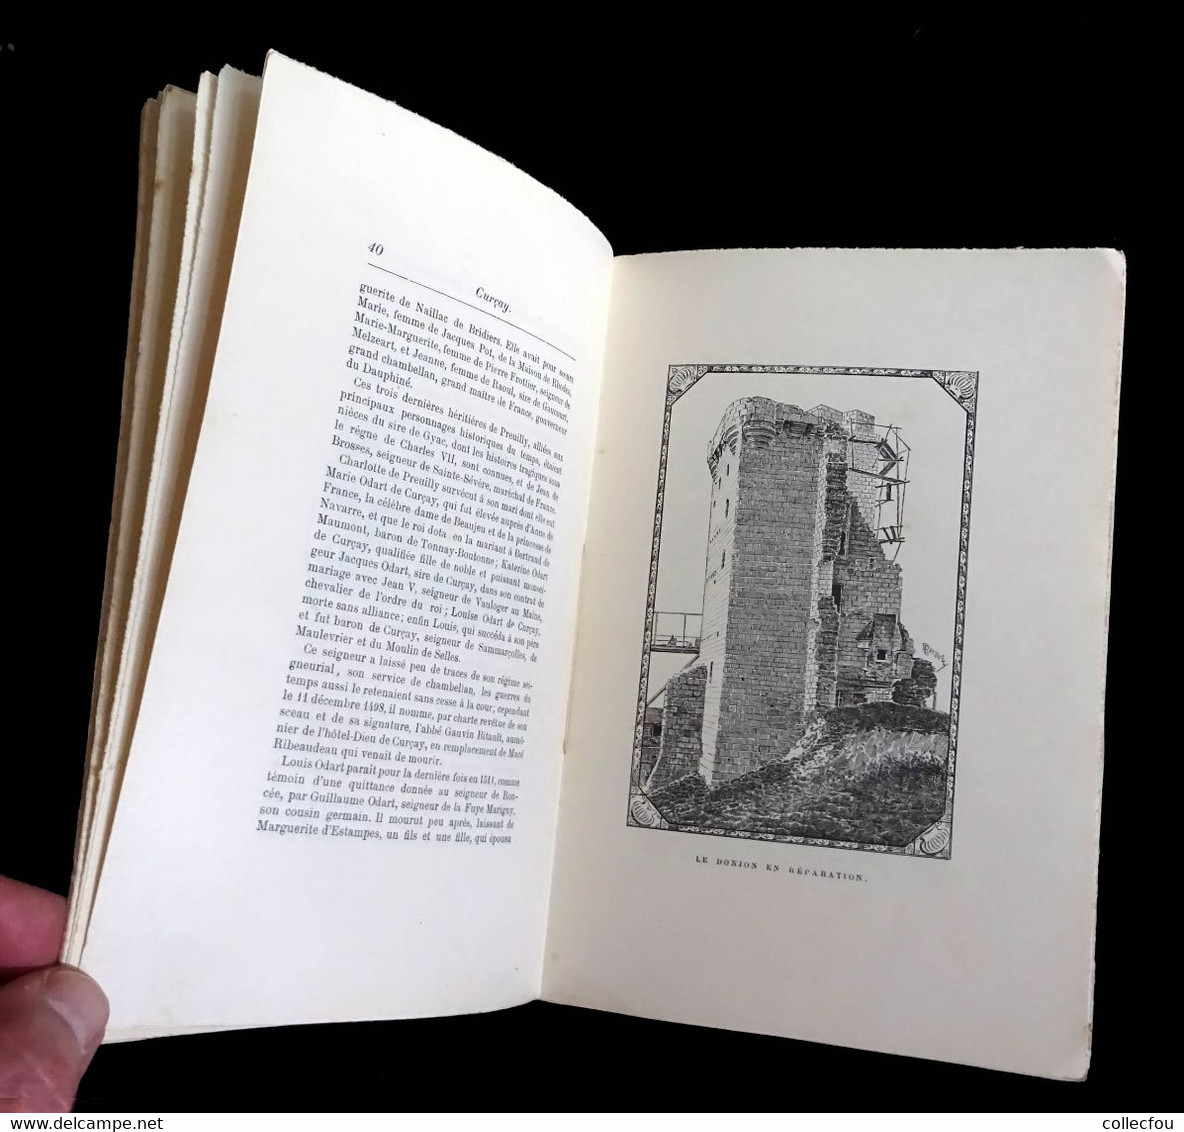 Livre sur CURÇAY-sur-DIVE (Vienne) par le Comte de RILLY, imprimé à seulement 100 exemplaires en 1898